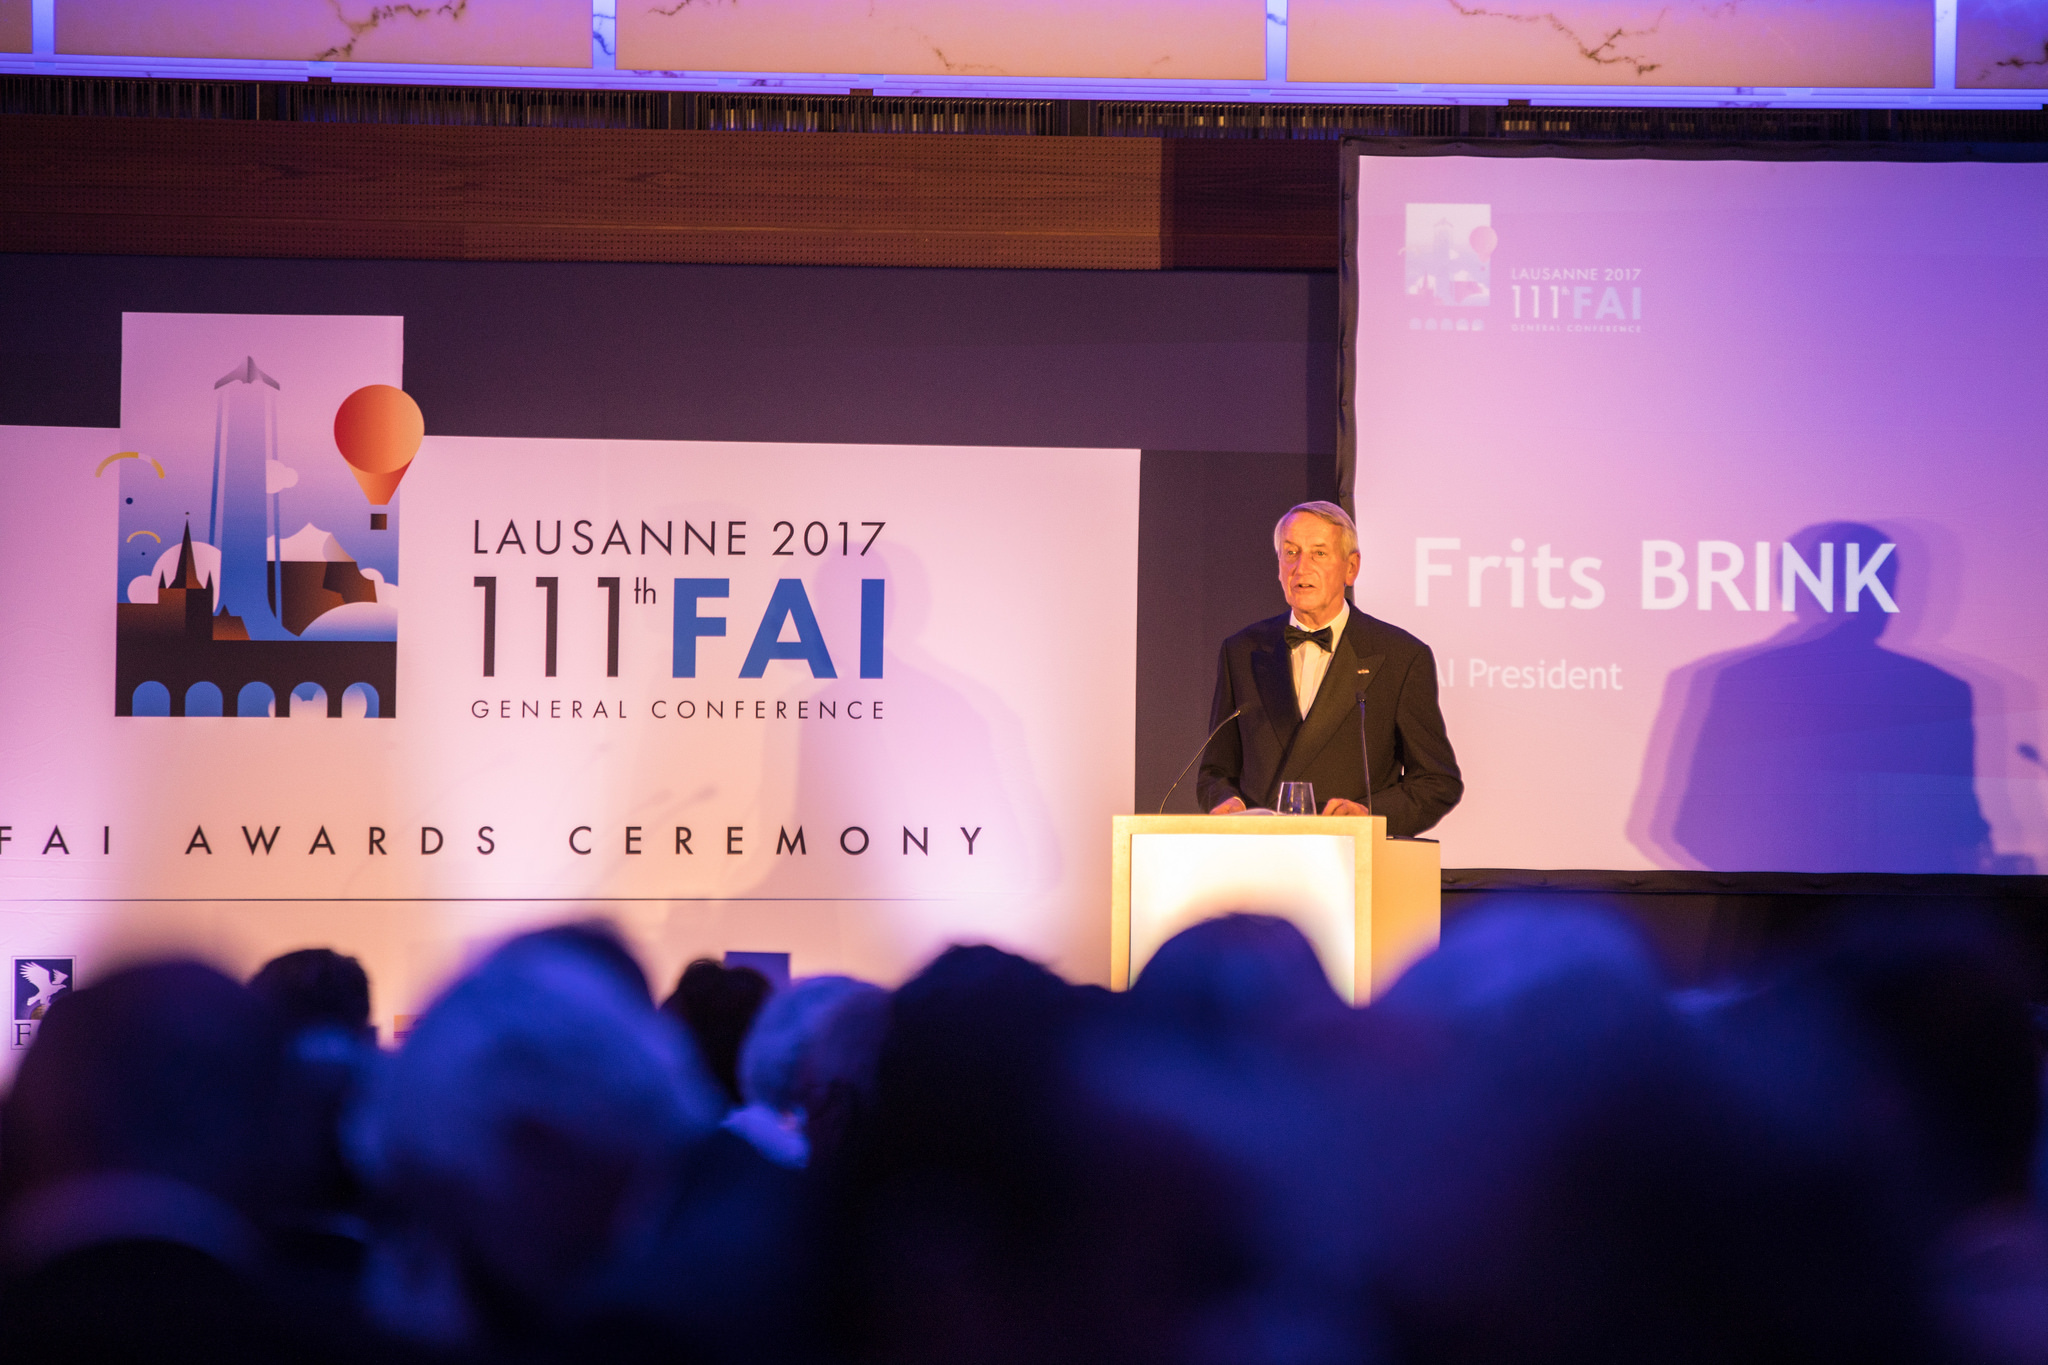 Opening the 2017 FAI Awards Ceremony